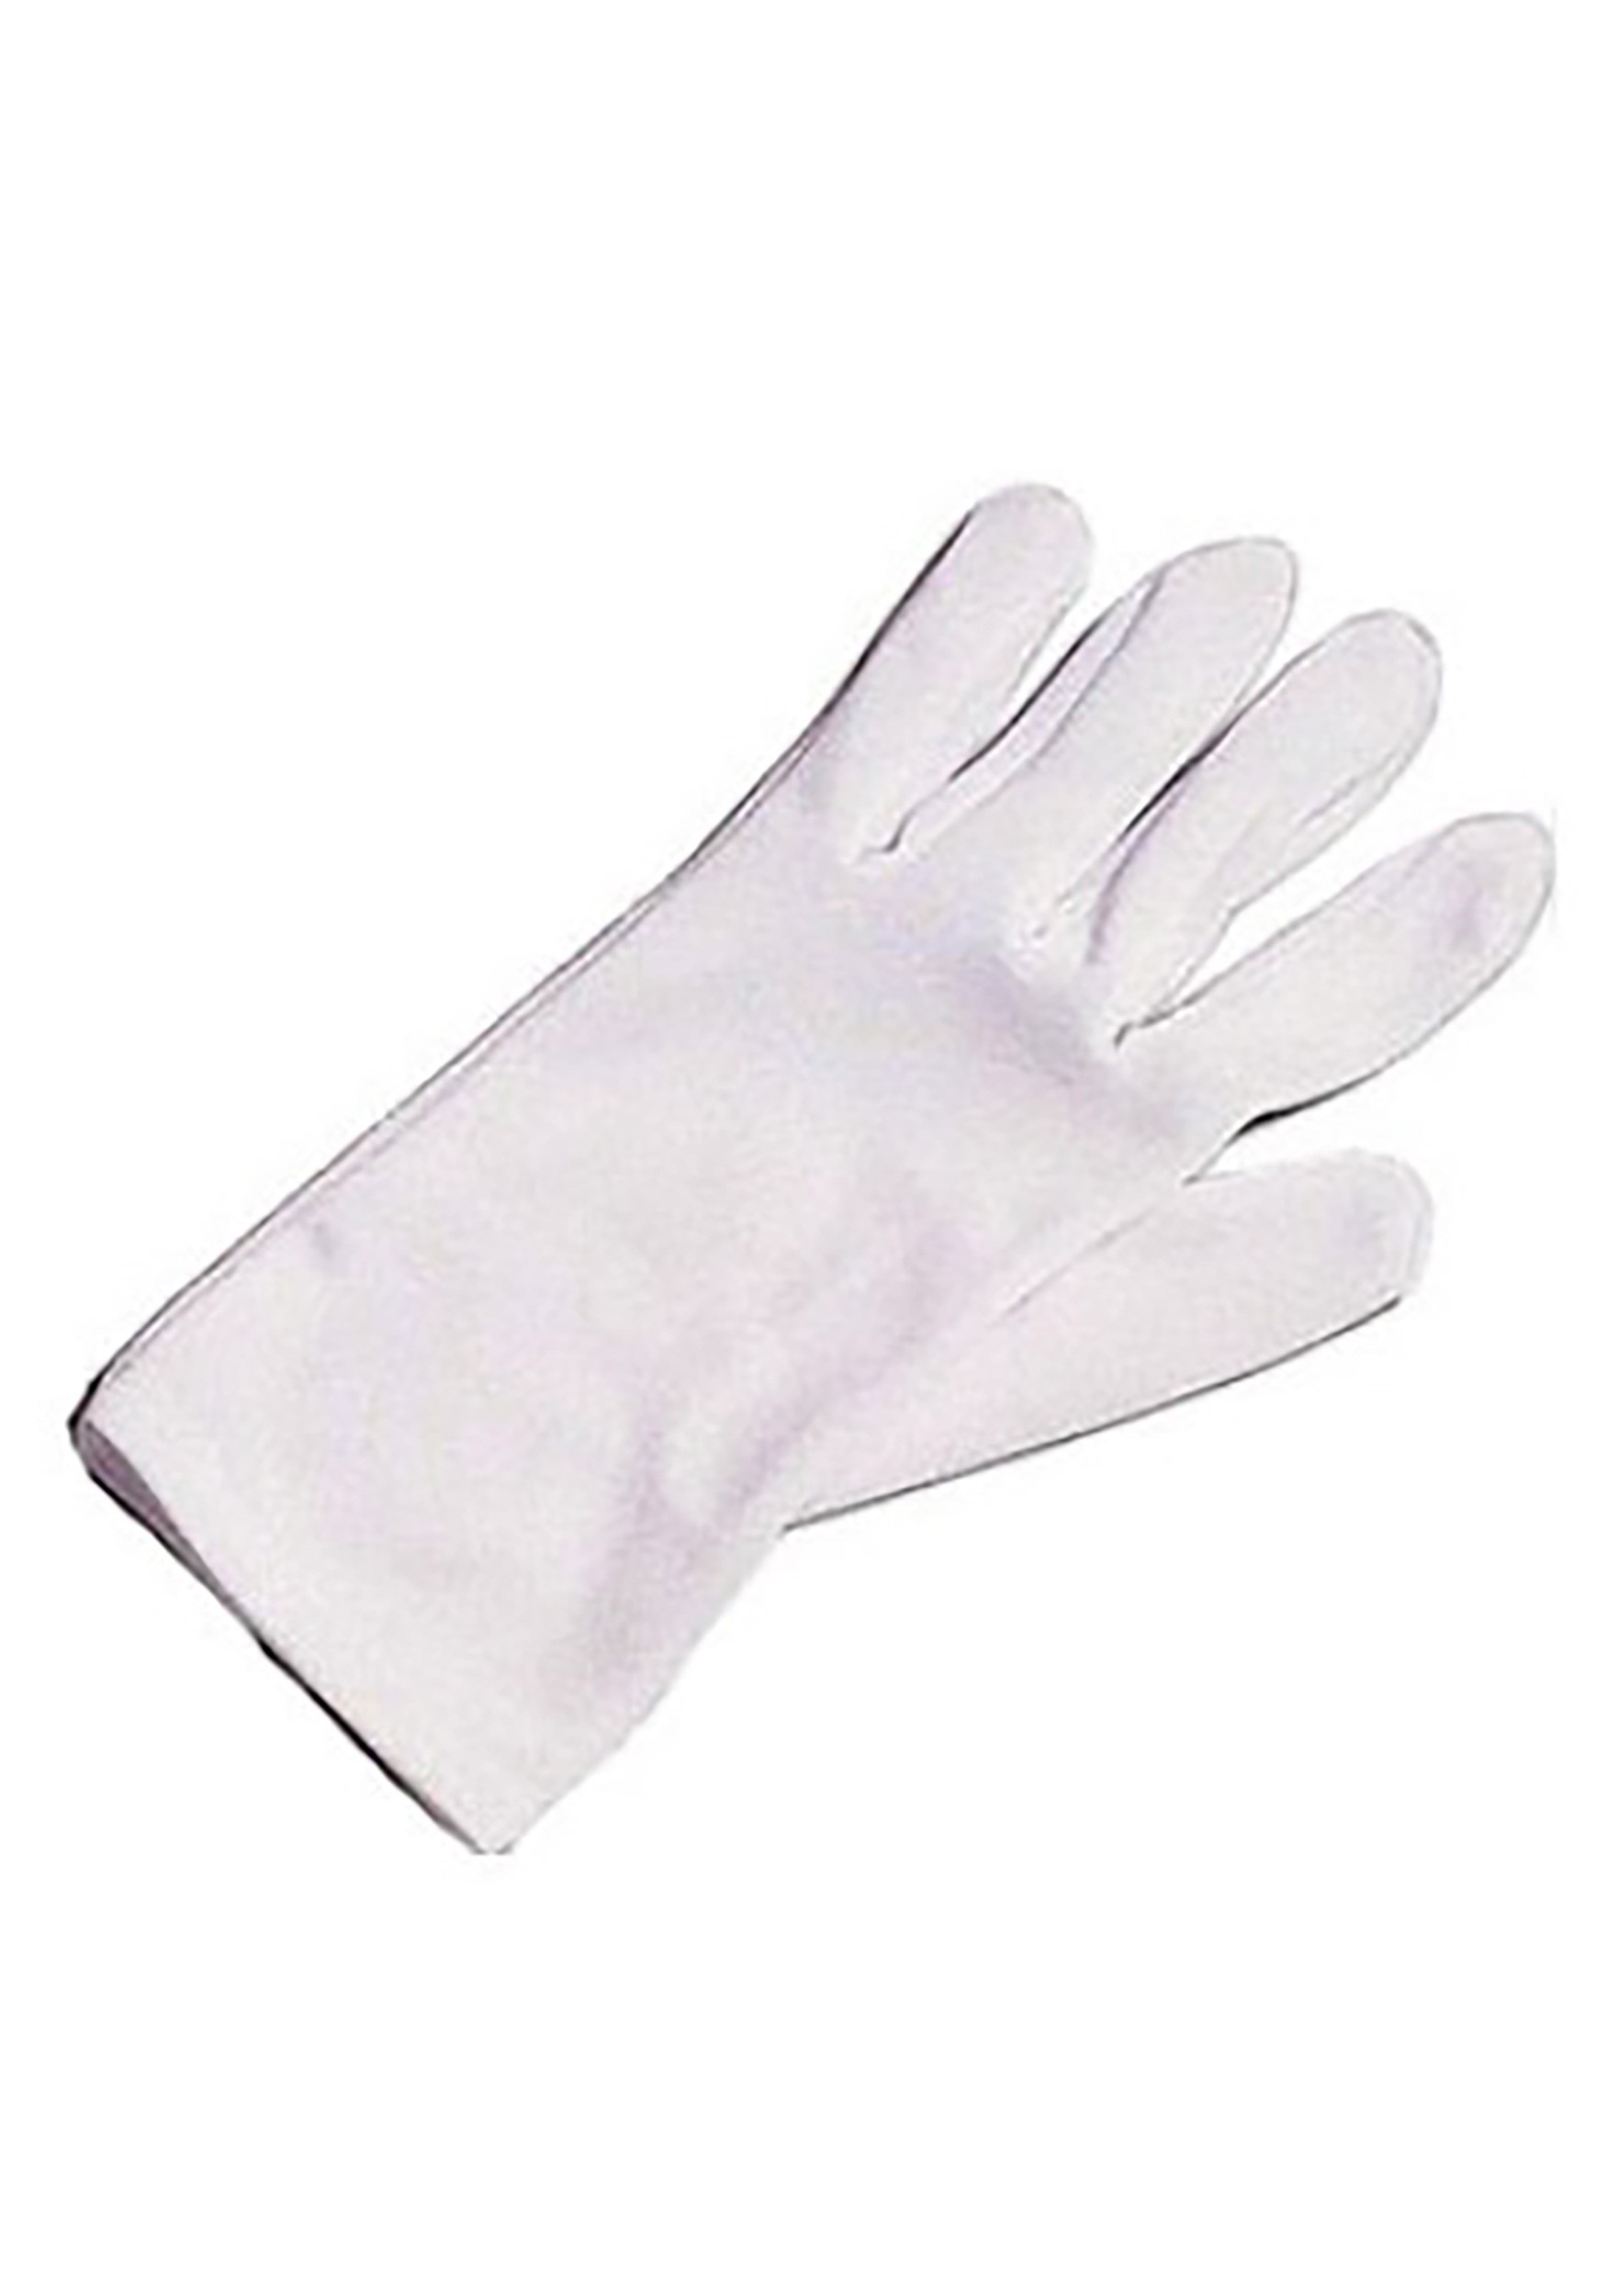 Olgaa 18 pares de guantes de disfraz para niños, guantes blancos de algodón  para accesorios de fiesta de disfraces, Blanco